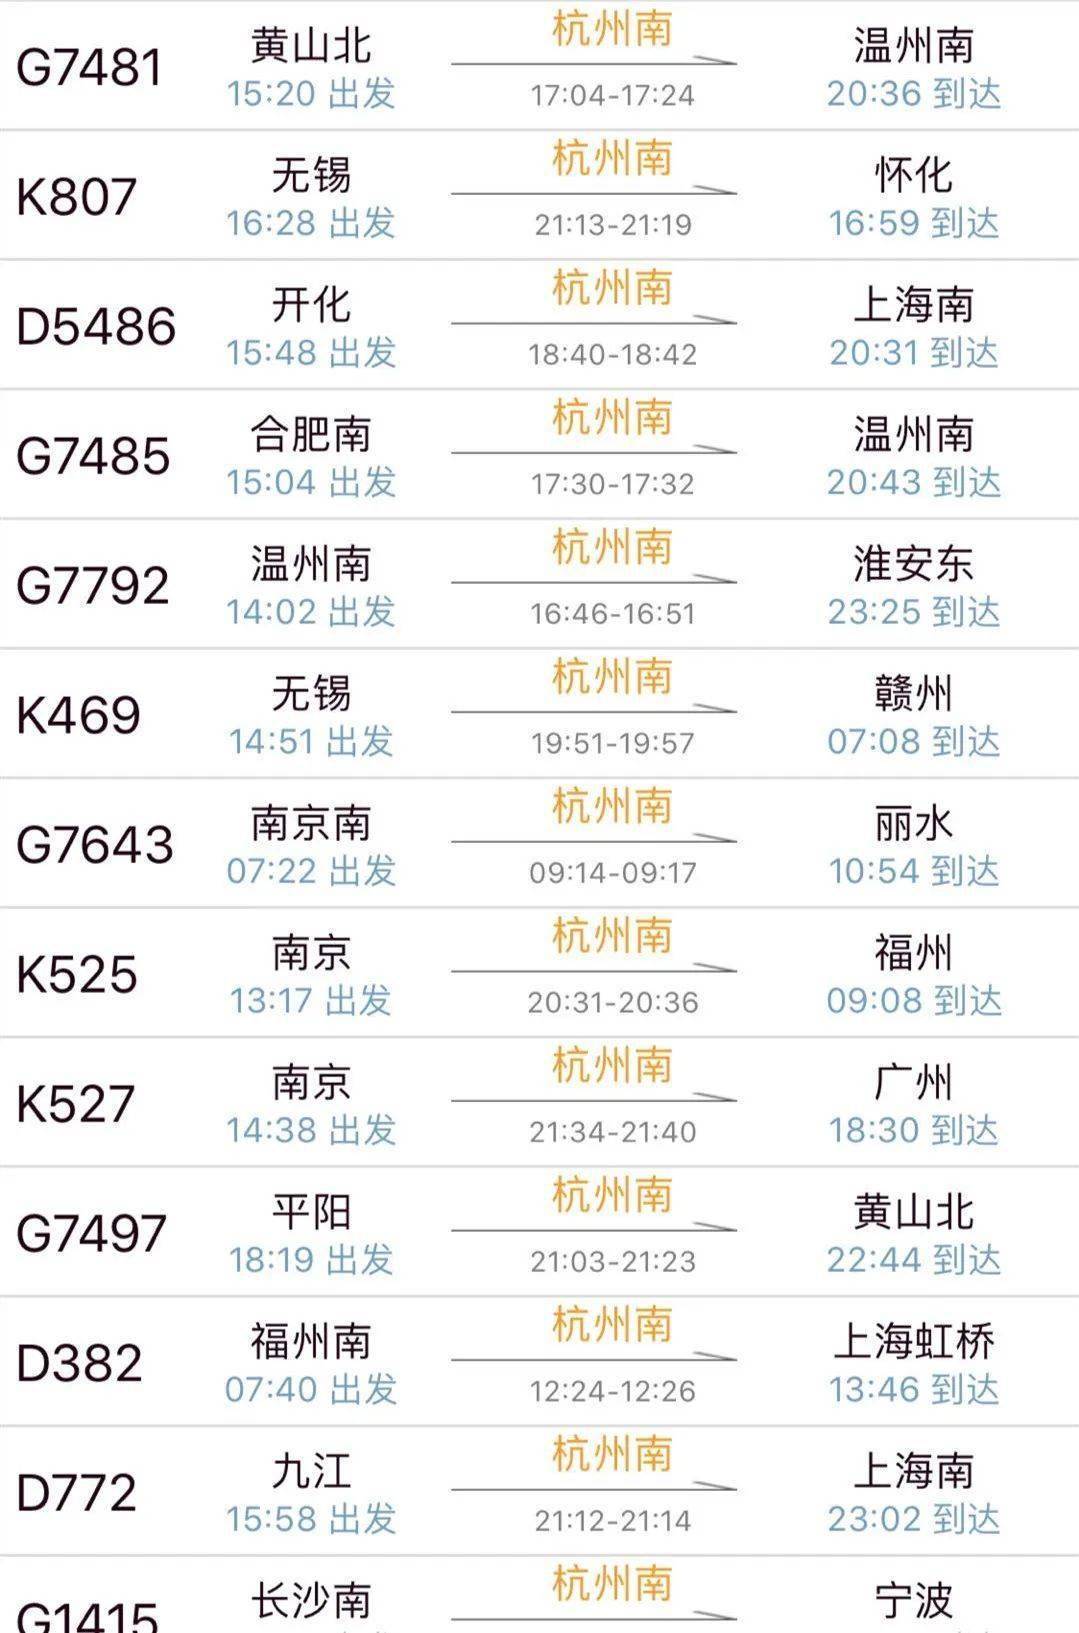 杭州南站火车票今天开售啦!要开通运行了吗?